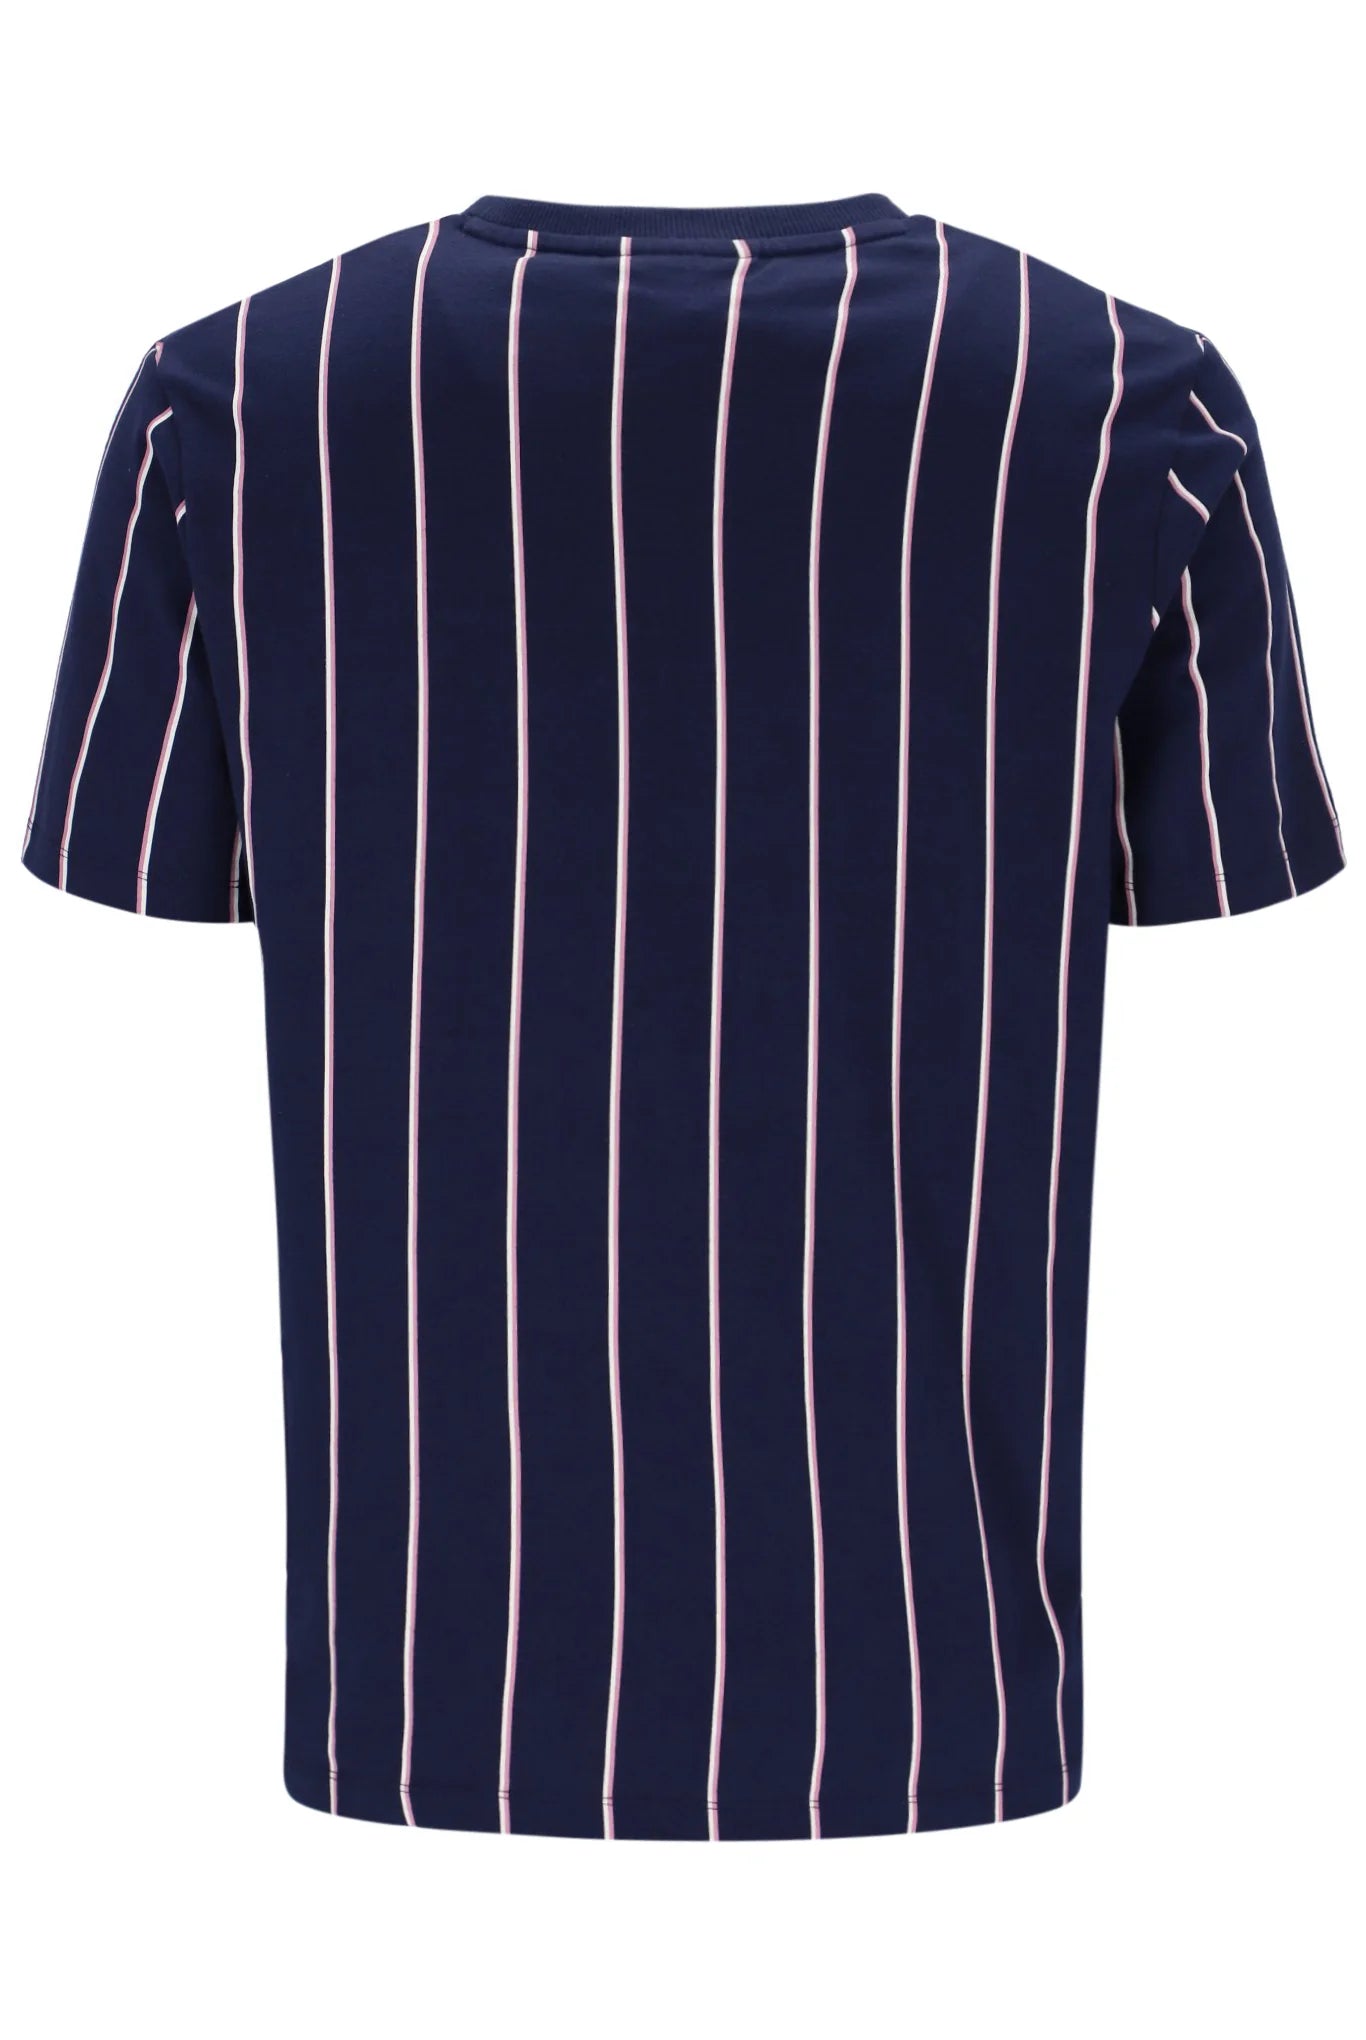 FILA Lee Pin Striped Tee Navy - Raw Menswear